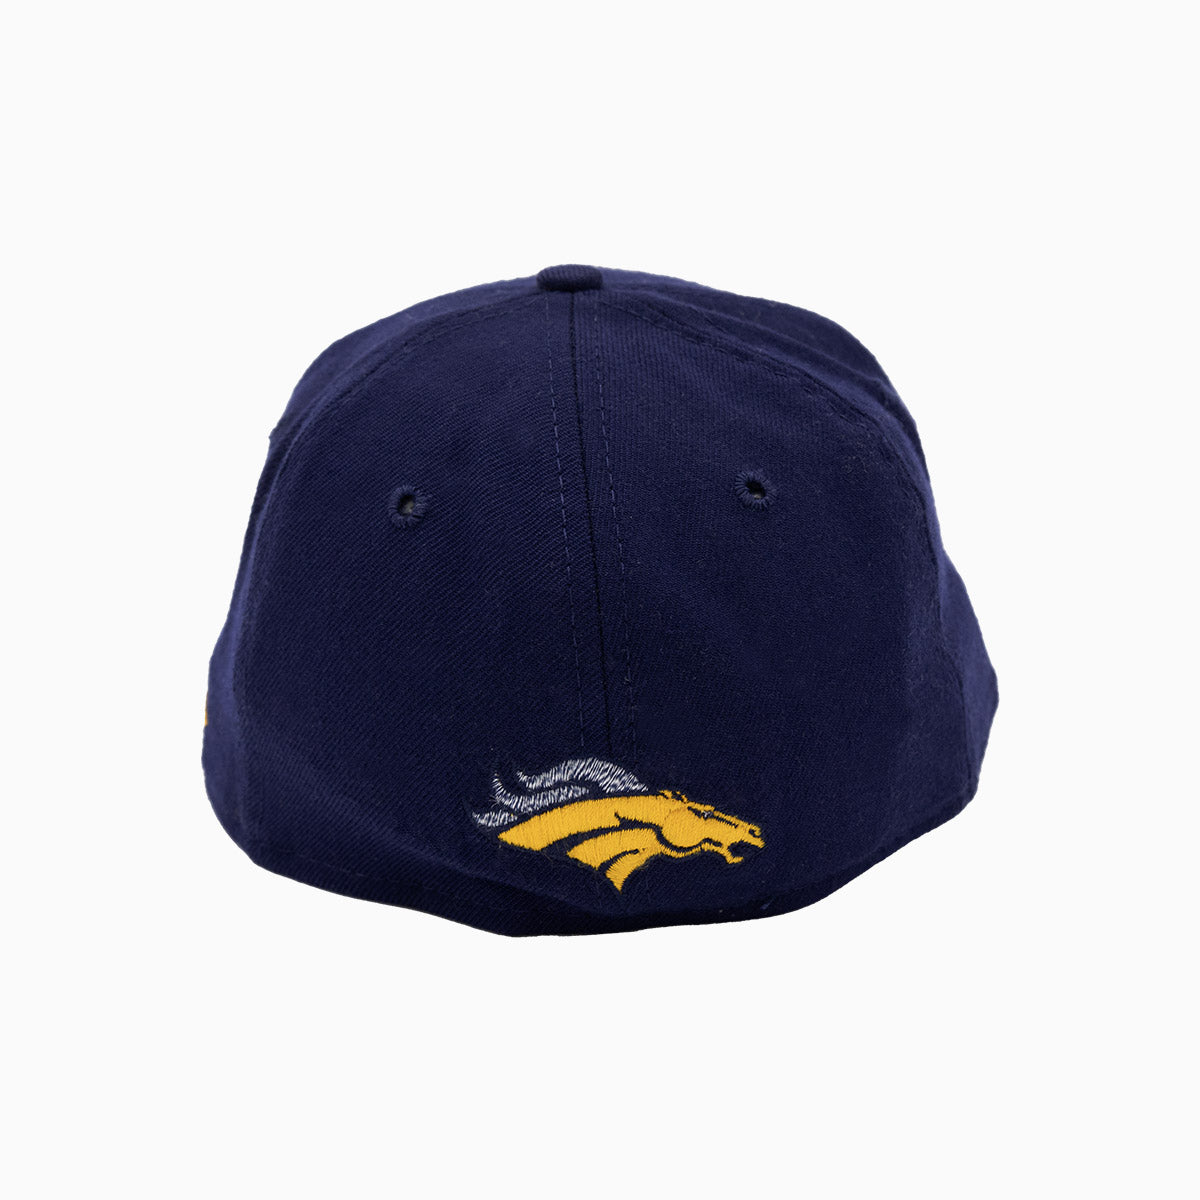 Denver Broncos NFL 59FIFTY Fitted Hat